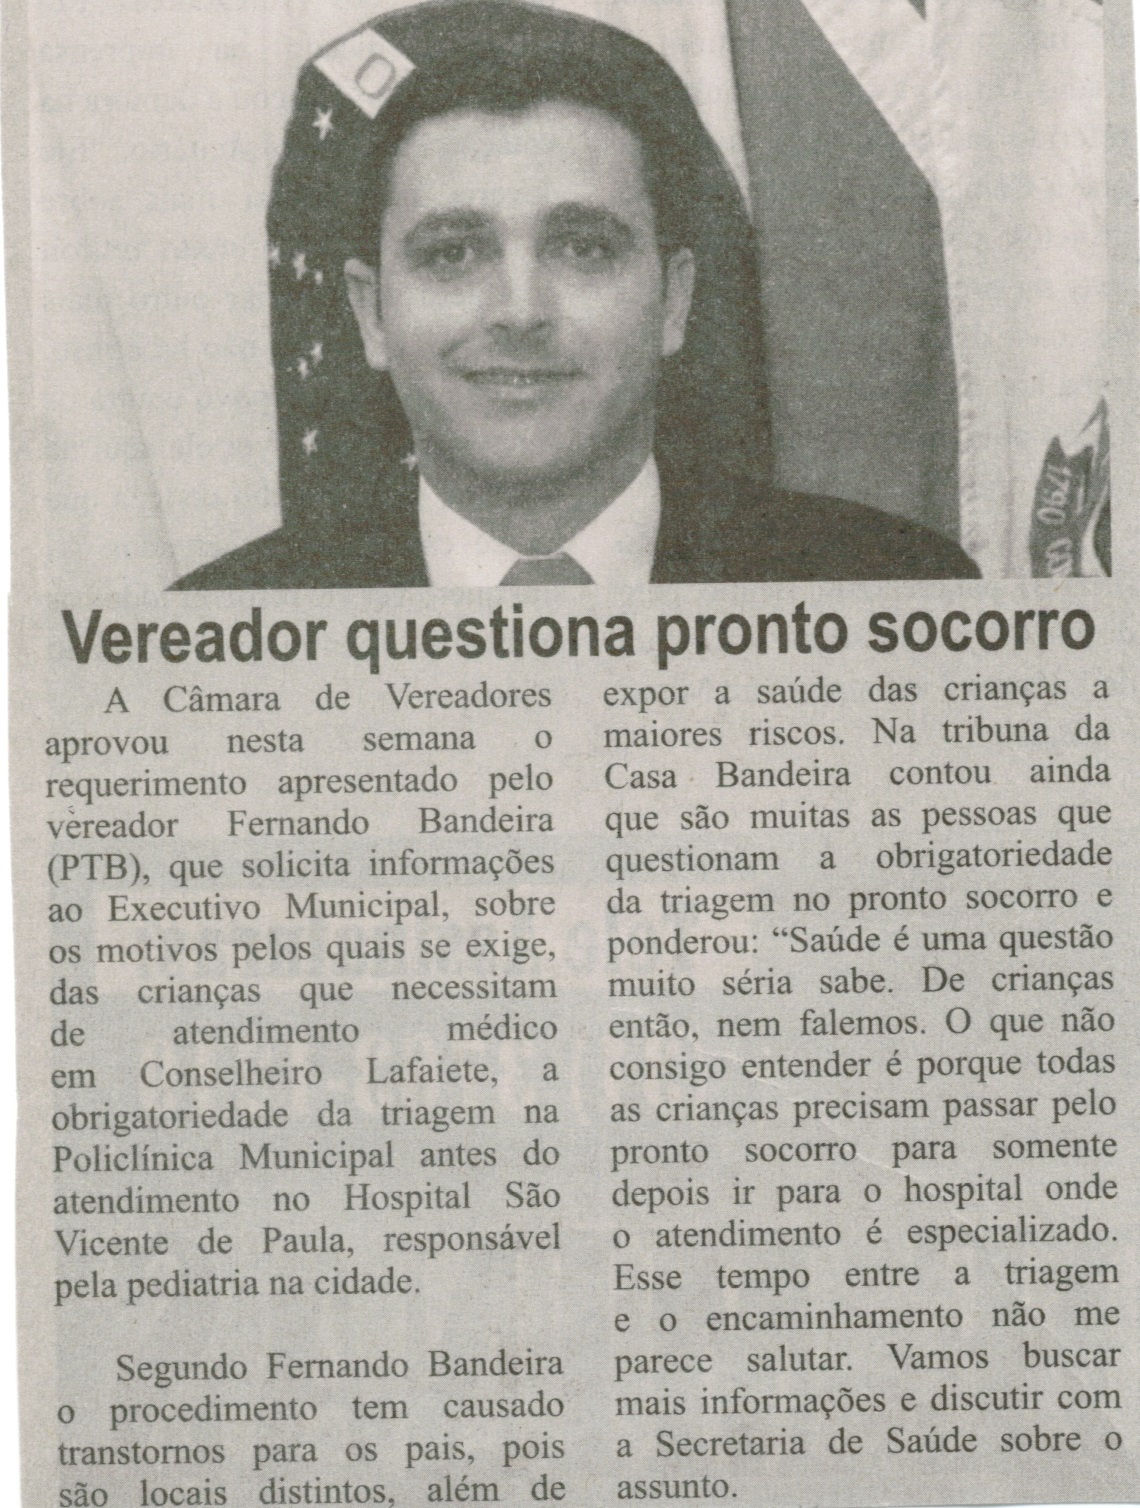 Vereador questiona pronto socorro. Correio de Minas, Conselheiro Lafaiete, 22 nov. 2014, p. 3.